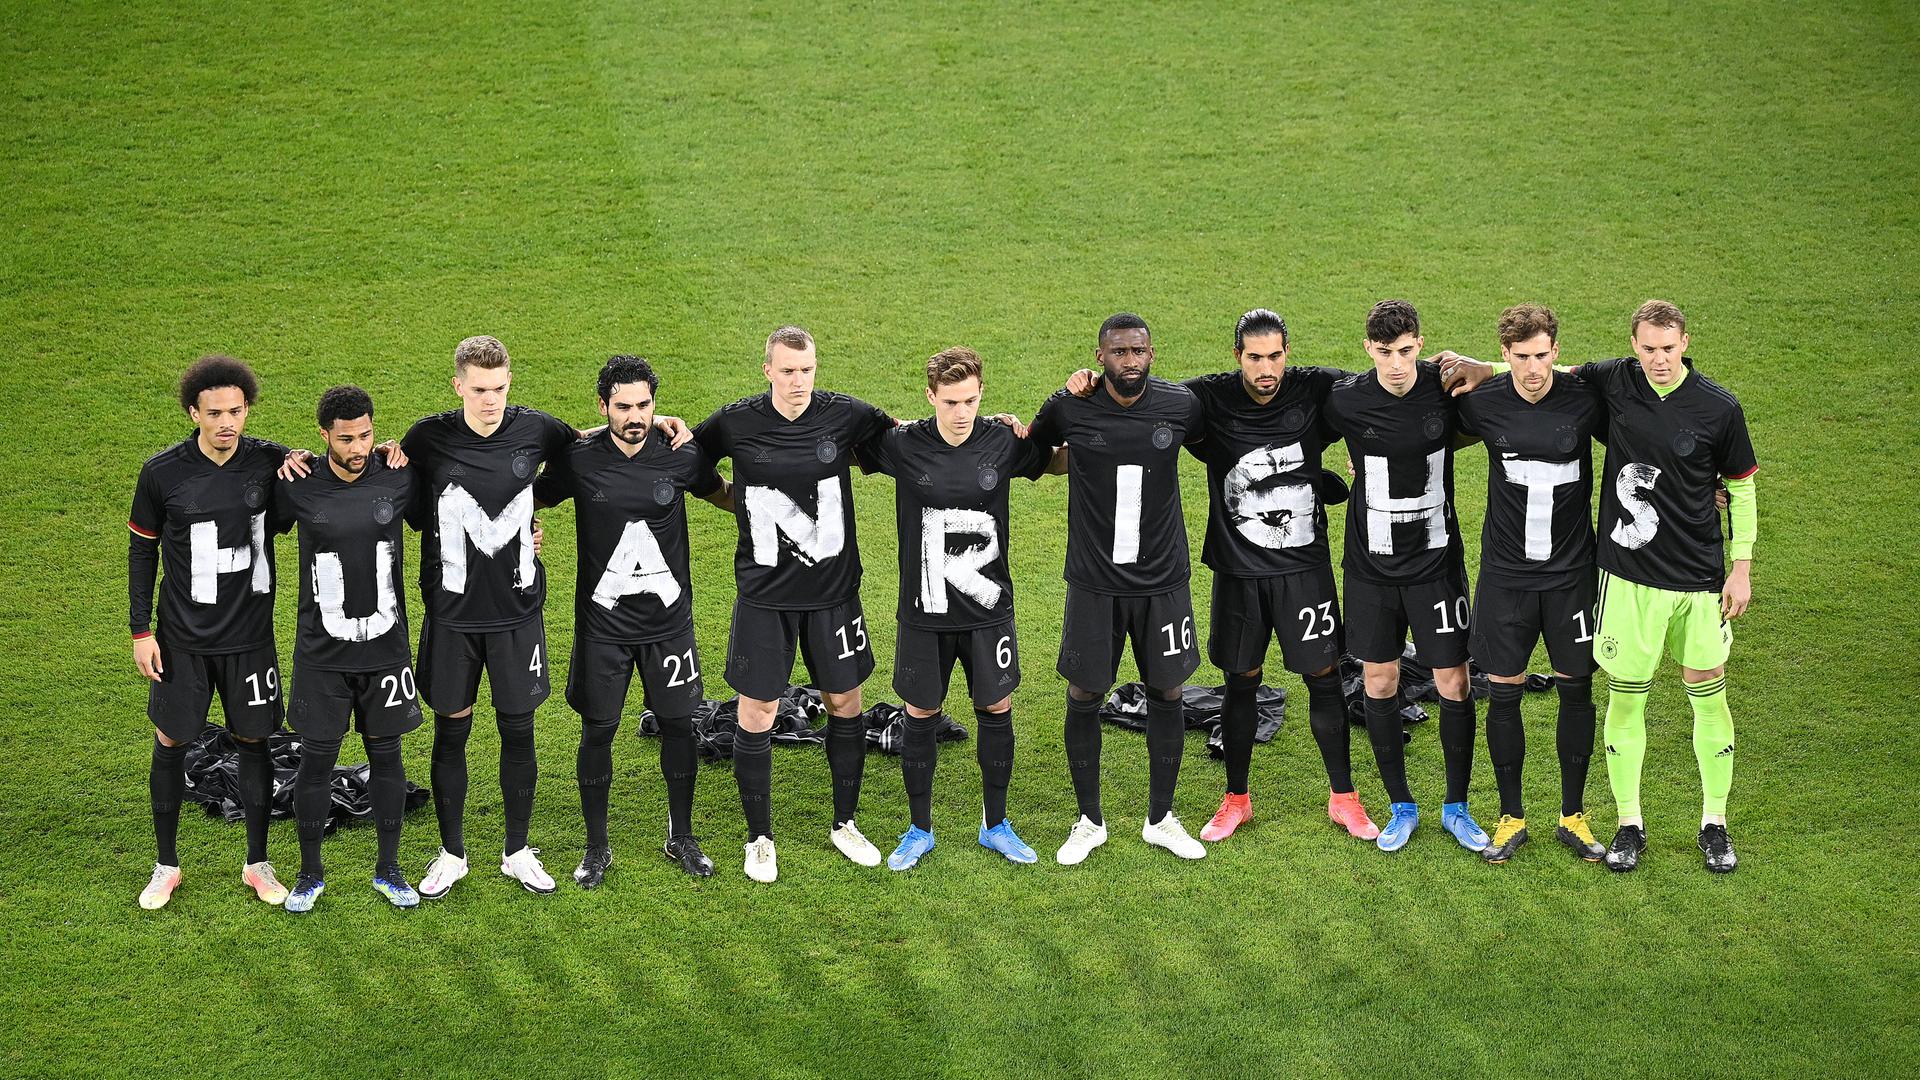 Fußballer stehen auf dem Rasen in einer Reihe und haben jeweils ein schwarzes T-Shirt an, auf dem mit weißer Farbe Human Rights geschrieben steht.